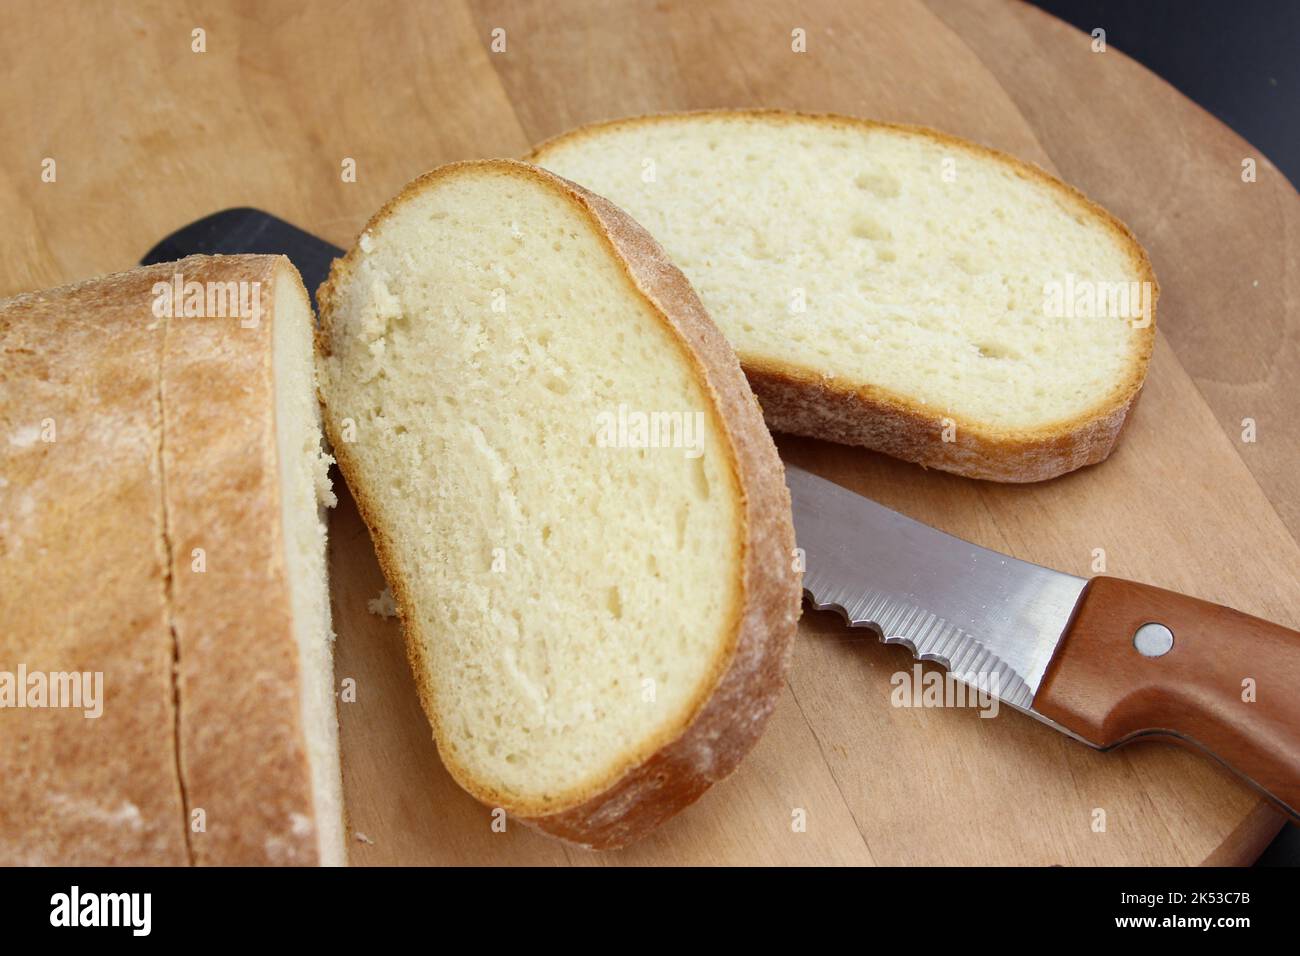 Le couteau coupe un pain en tranches. Couper du pain frais à l'aide d'un couteau Banque D'Images